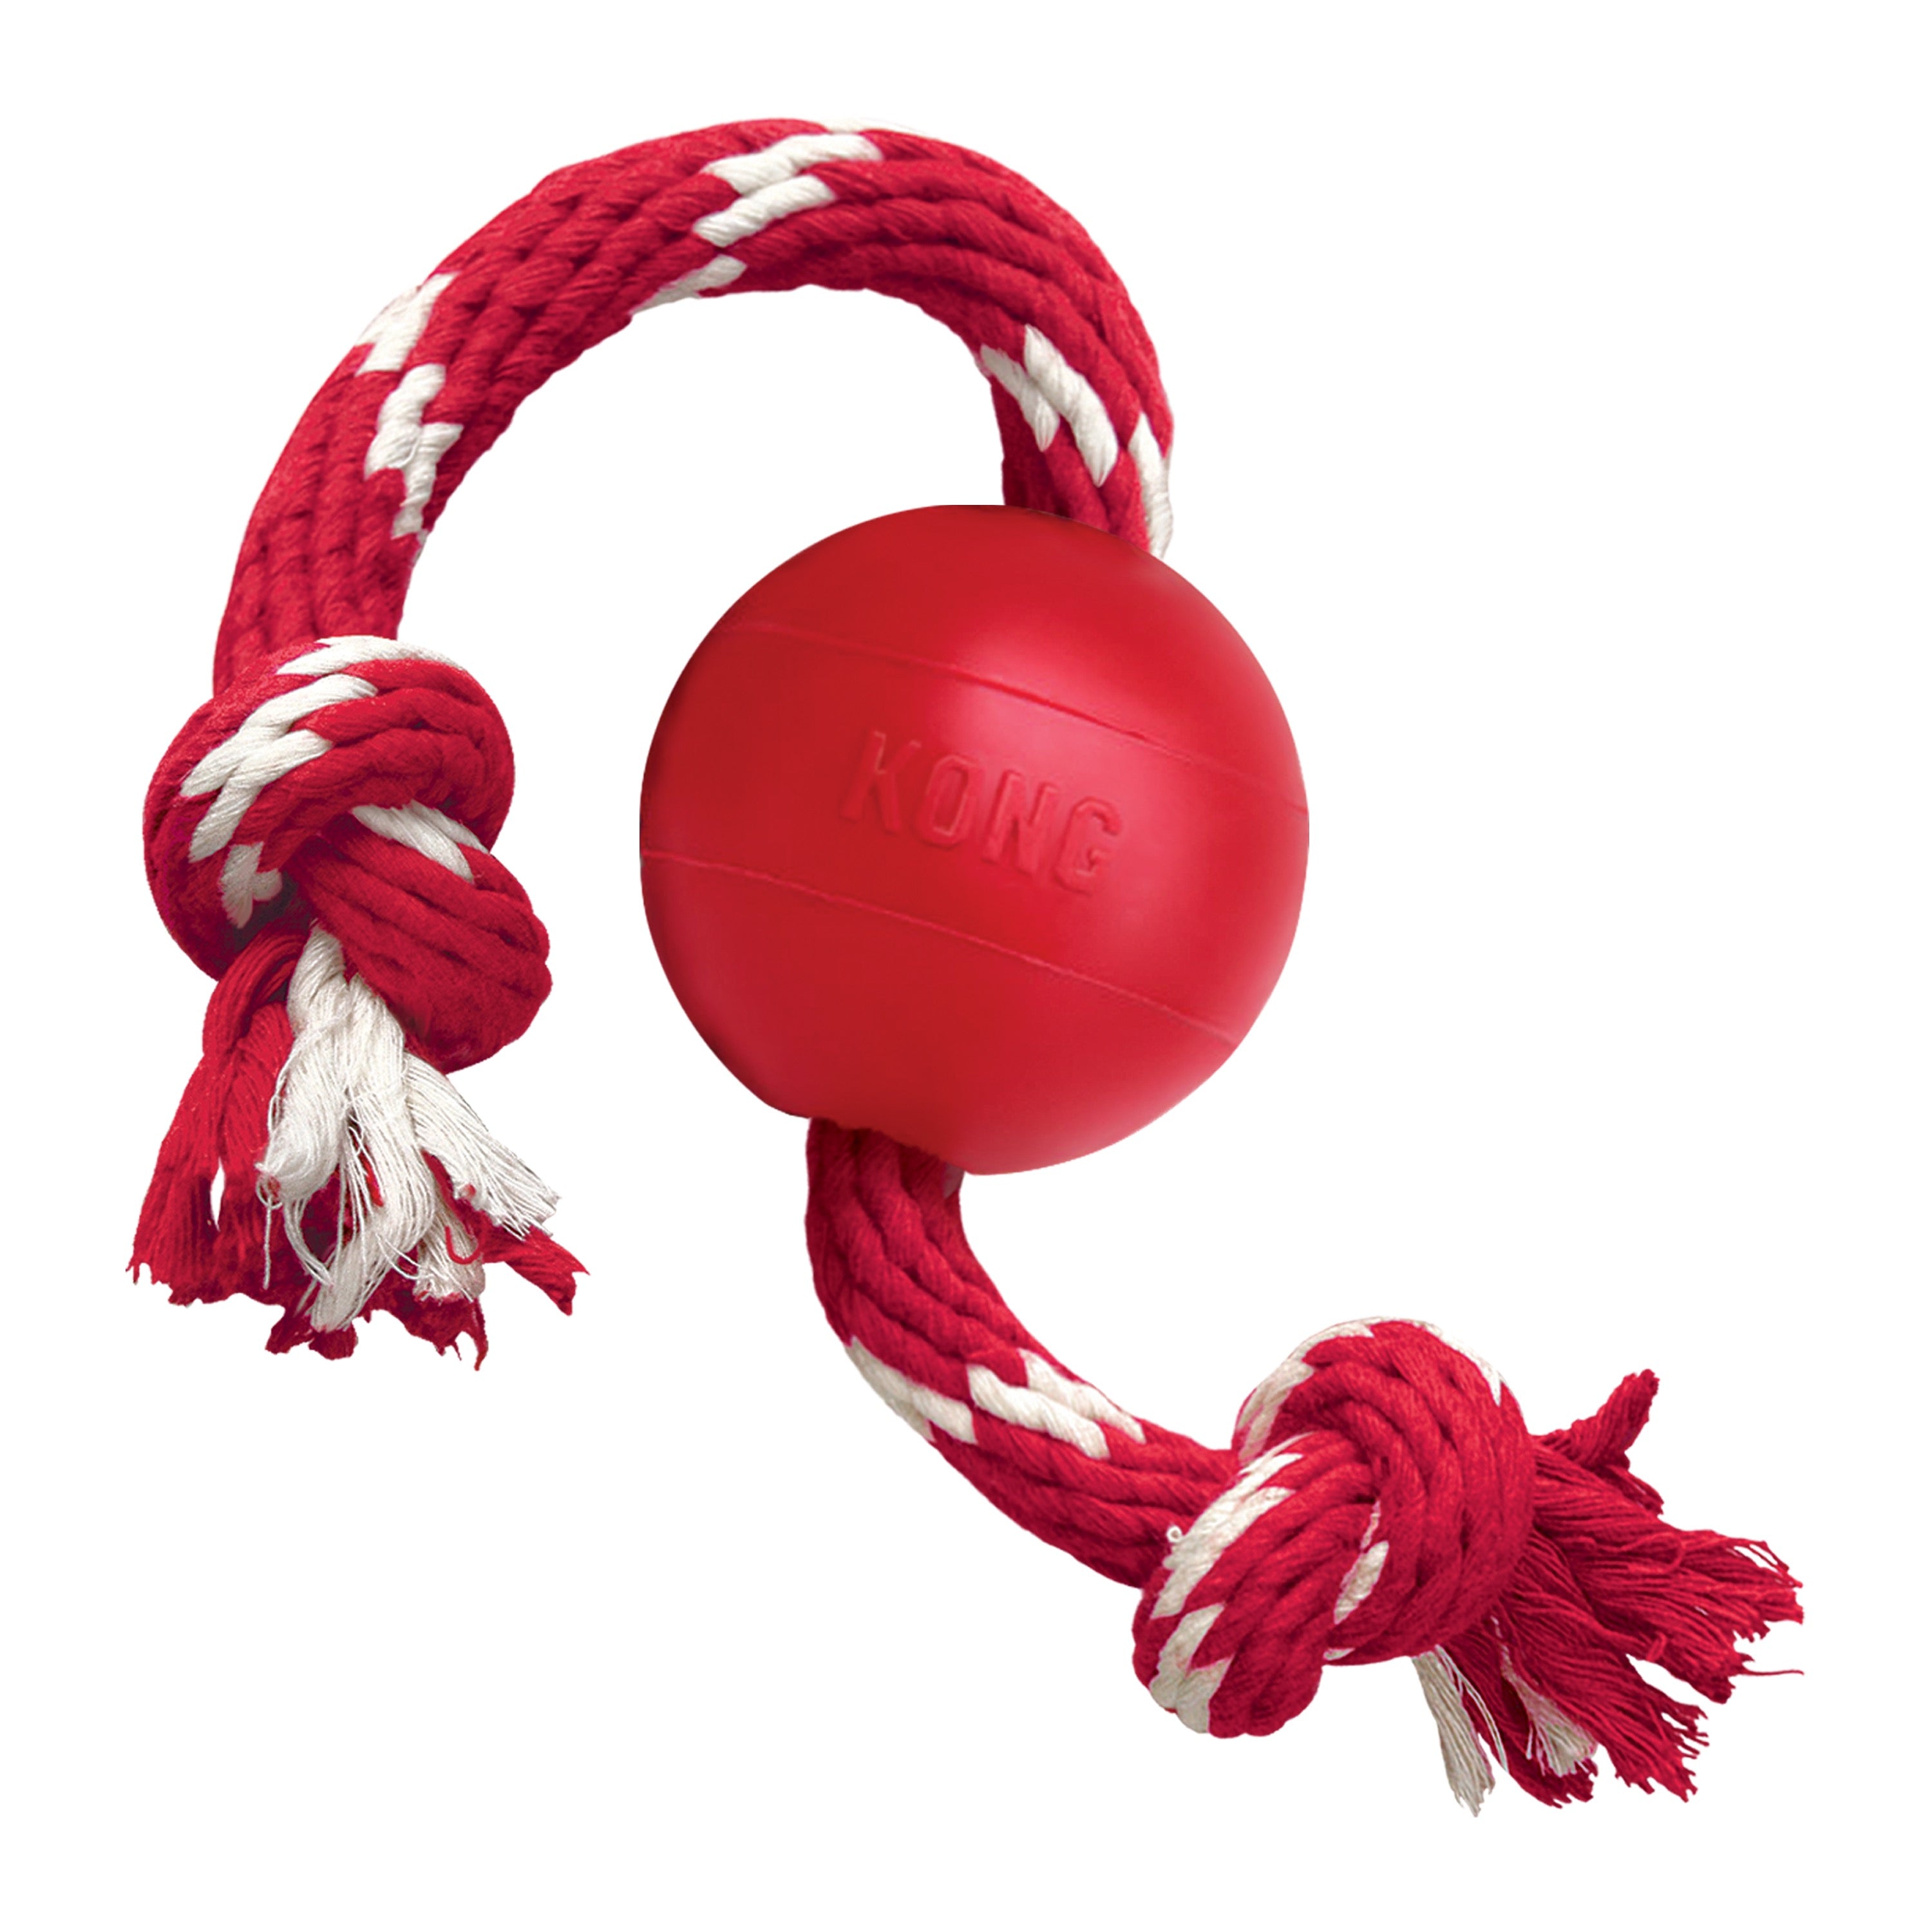 Kong Ball c/Rope - Pelota Kong Clásica con Cuerda